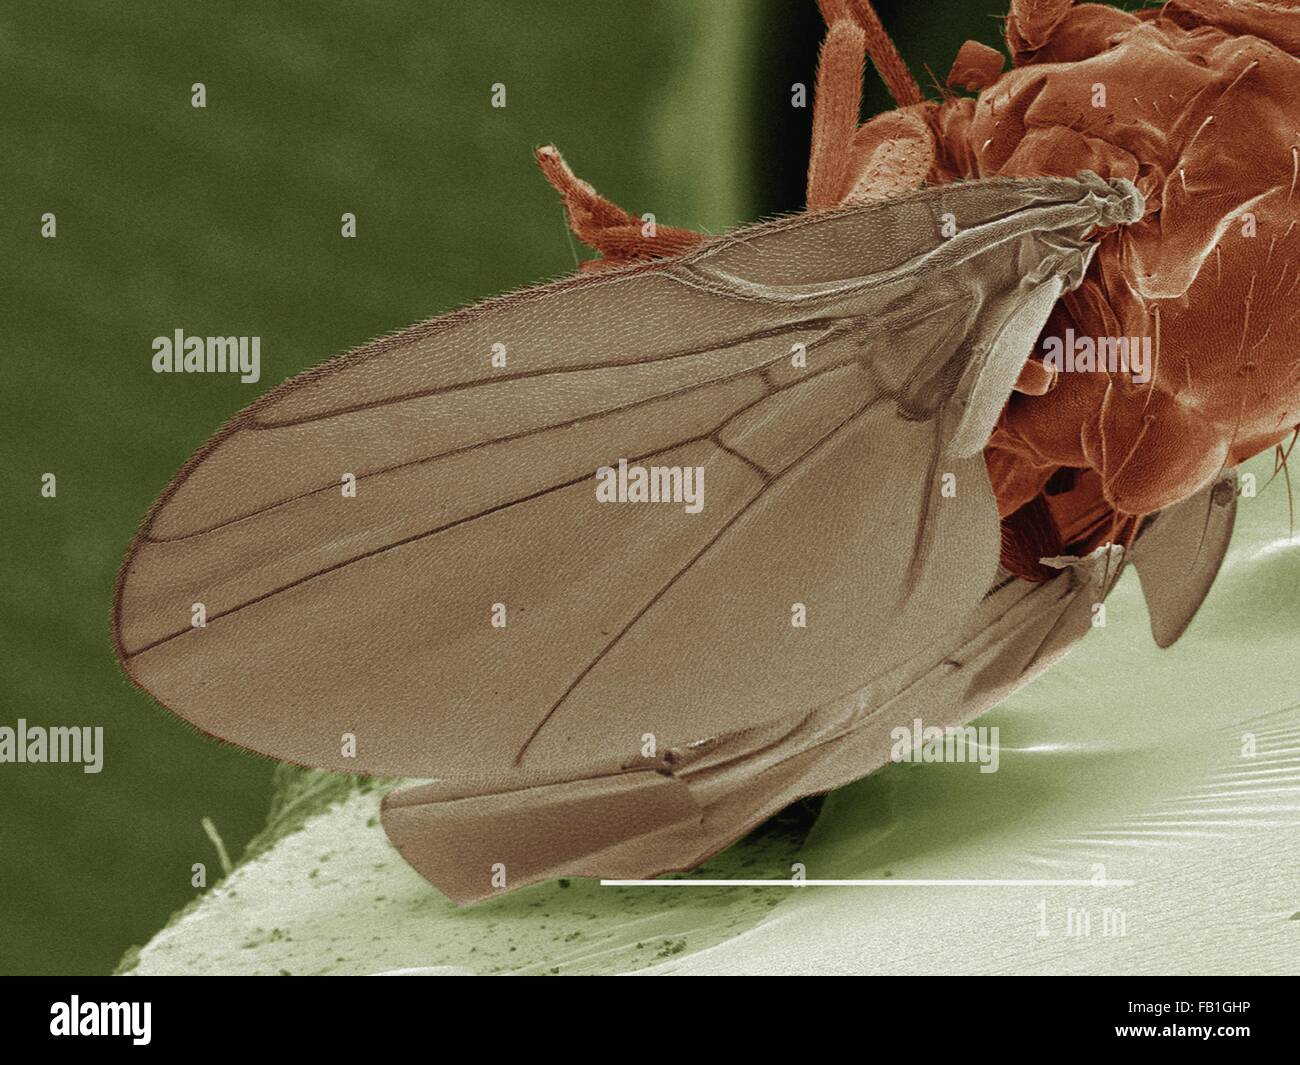 Coloured SEM of leaf mining fly (Agromyzidae) Stock Photo